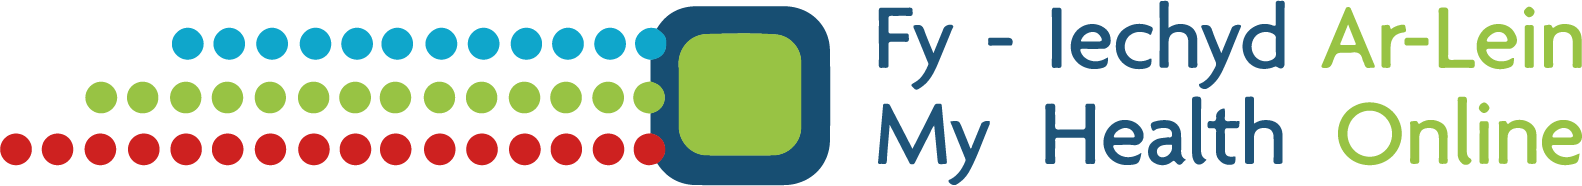 My Health Online logo